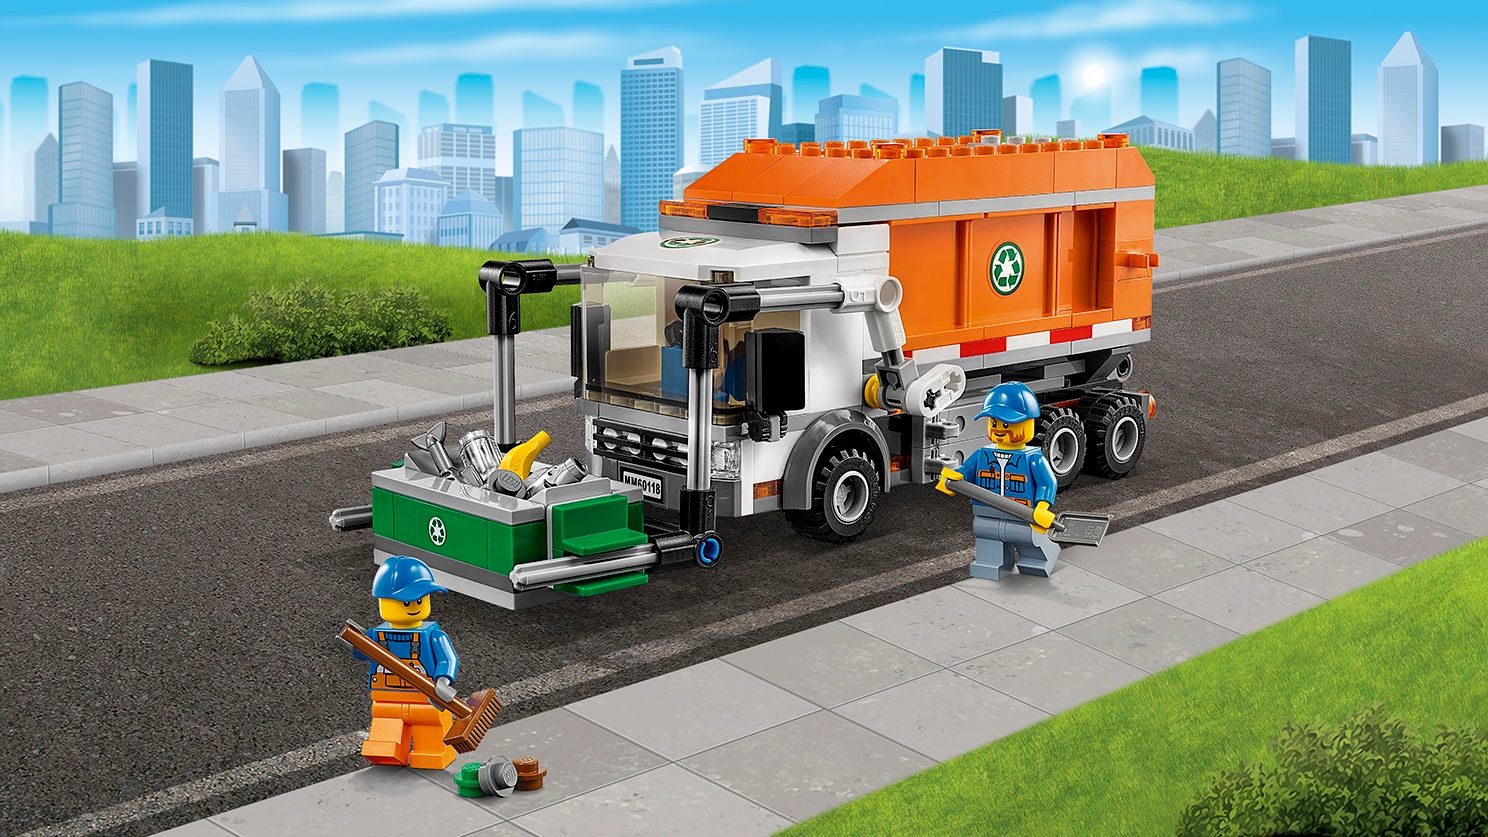 NUEVO Lego 60118 City Camión de la Basura 